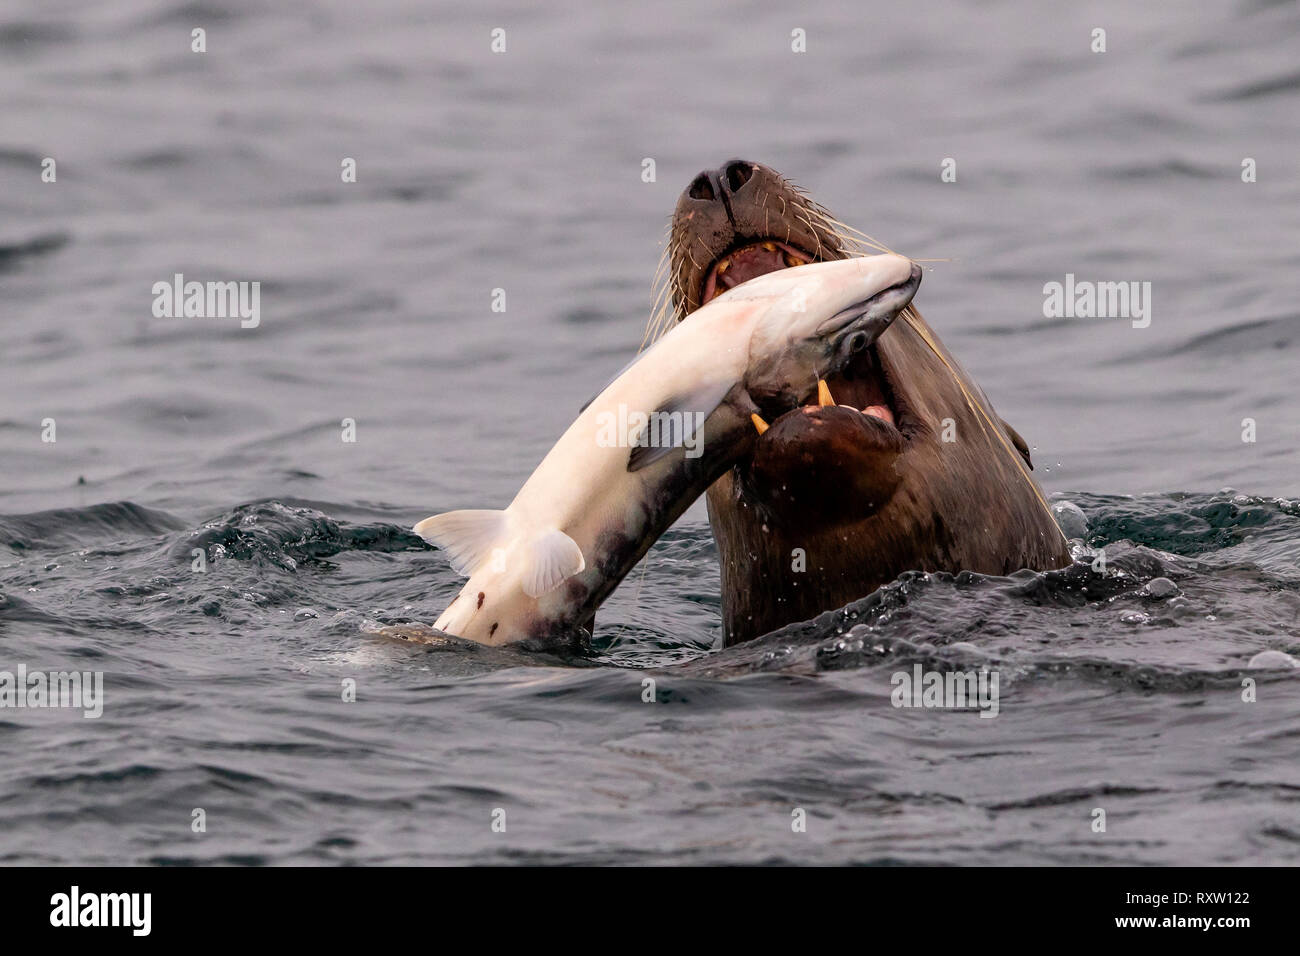 Un gran león marino Steller que cataba y comía un salmón salvaje fresco capturado en el archipiélago de Broughton, Territorio de las primeras Naciones, Columbia Británica, Canadá Foto de stock